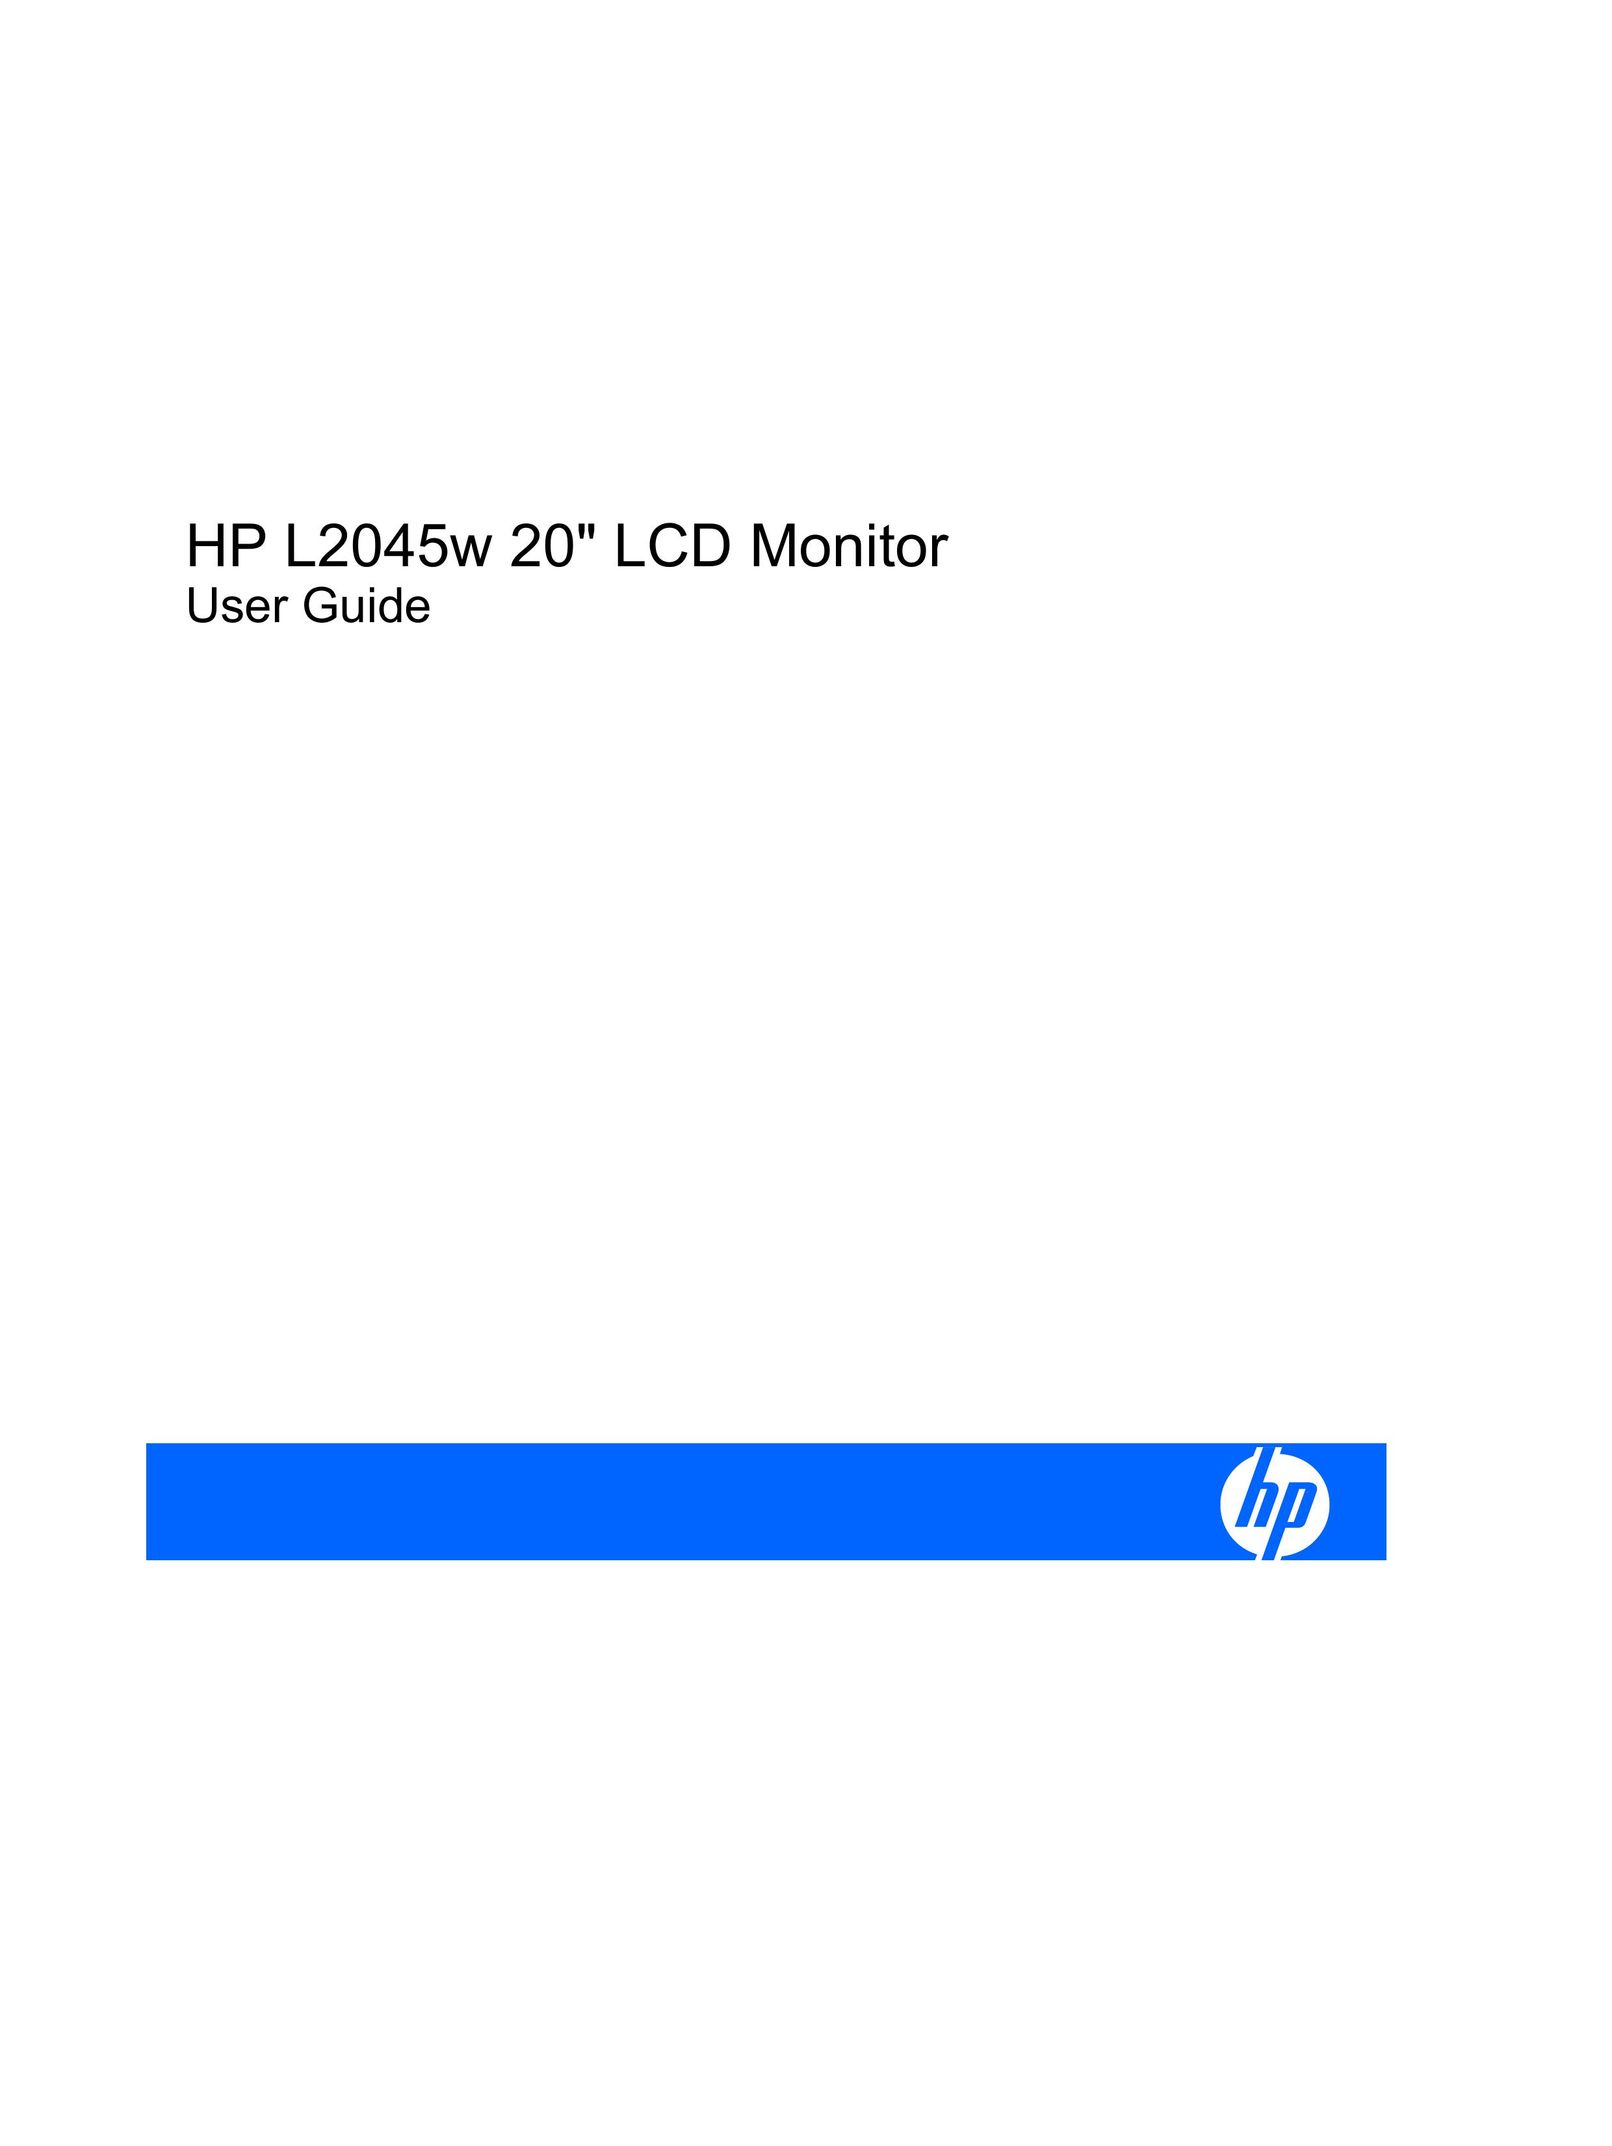 HP (Hewlett-Packard) L2045w Car Video System User Manual